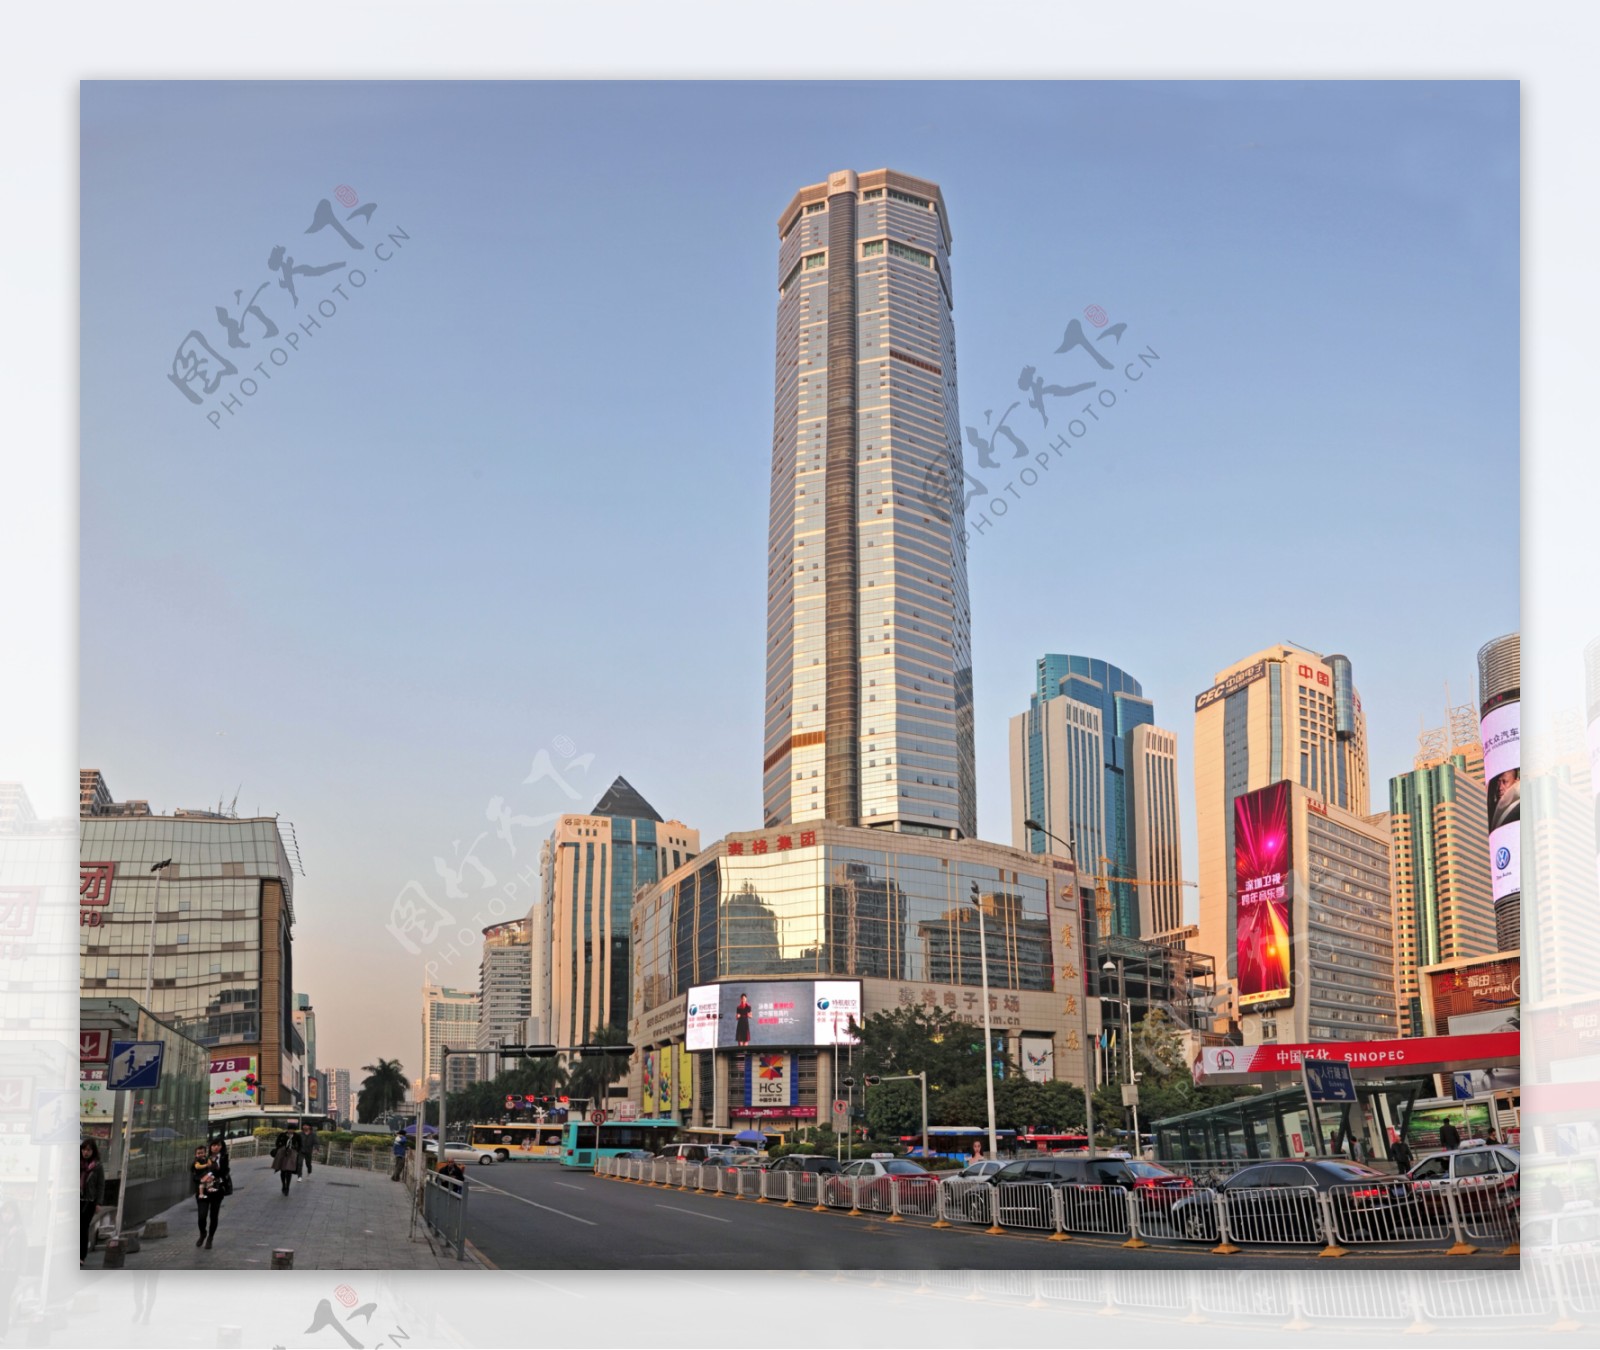 深圳华强北赛格电子大厦图片